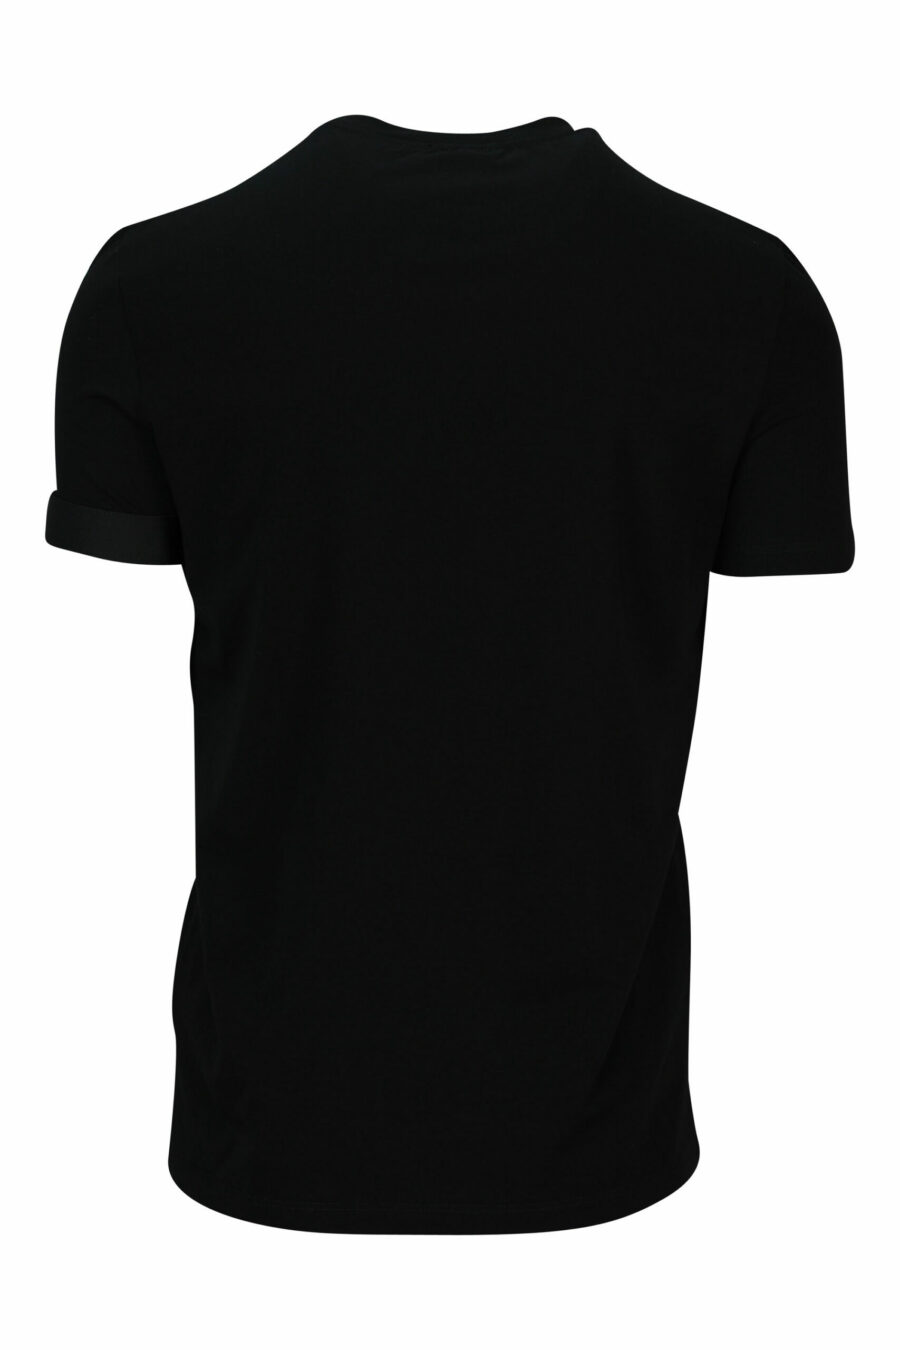 Schwarzes T-Shirt mit kleinem Logo - 8032674767431 2 skaliert